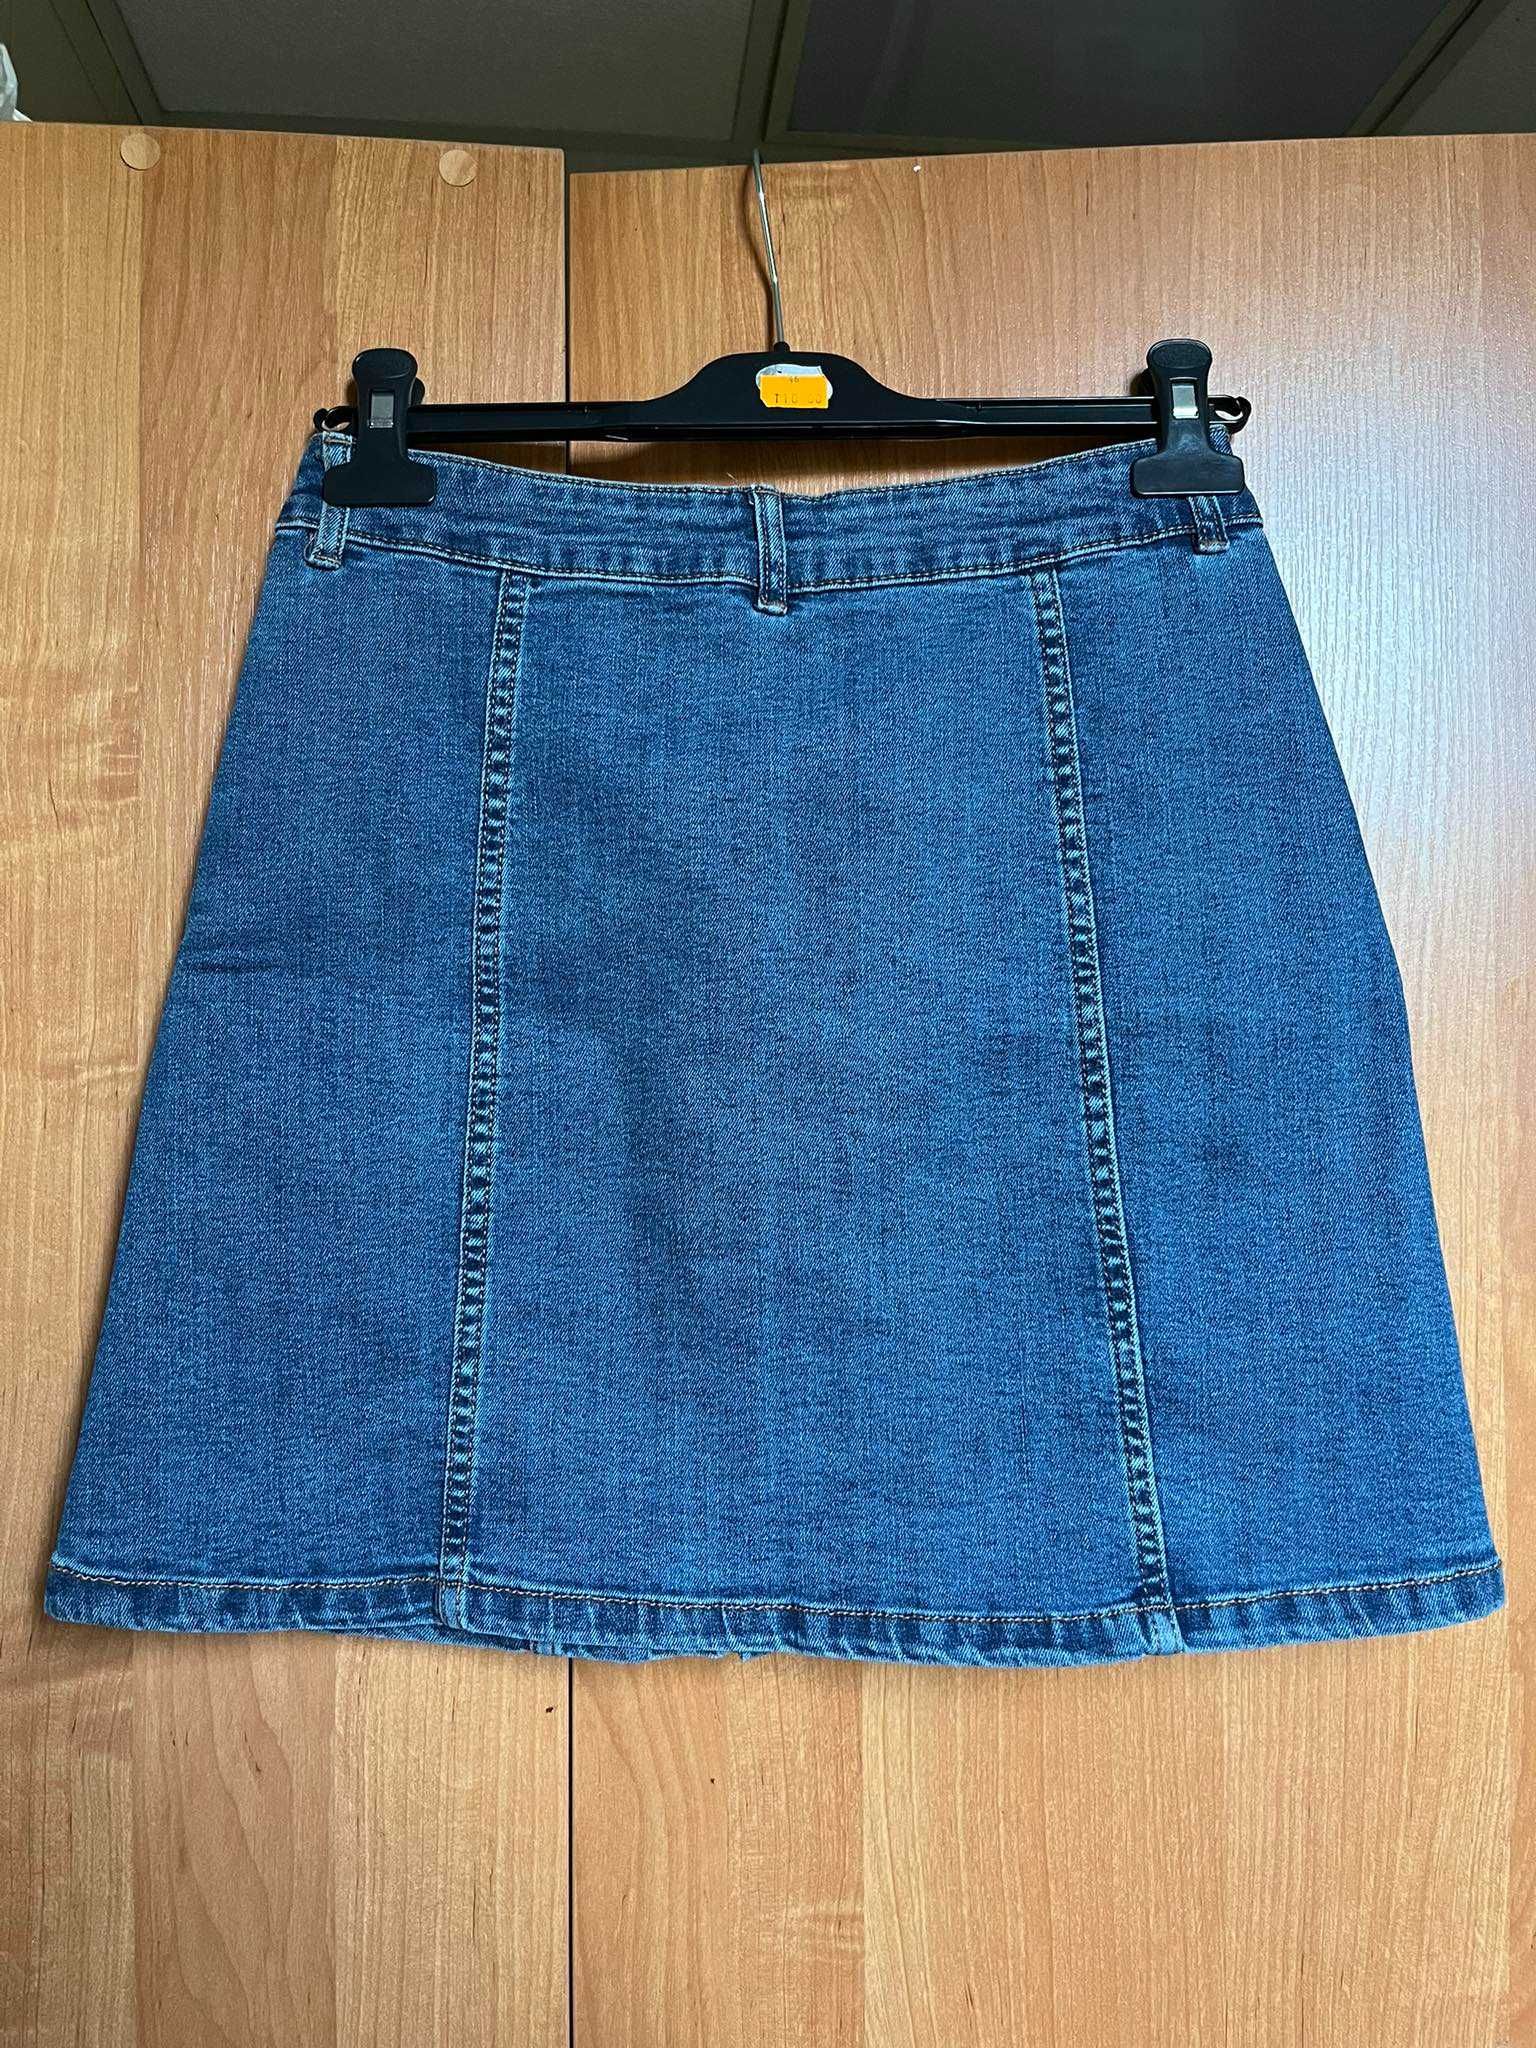 Dżinsowa jeansowa spódnica spódniczka z guzikami Esmara rozmiar XS 34